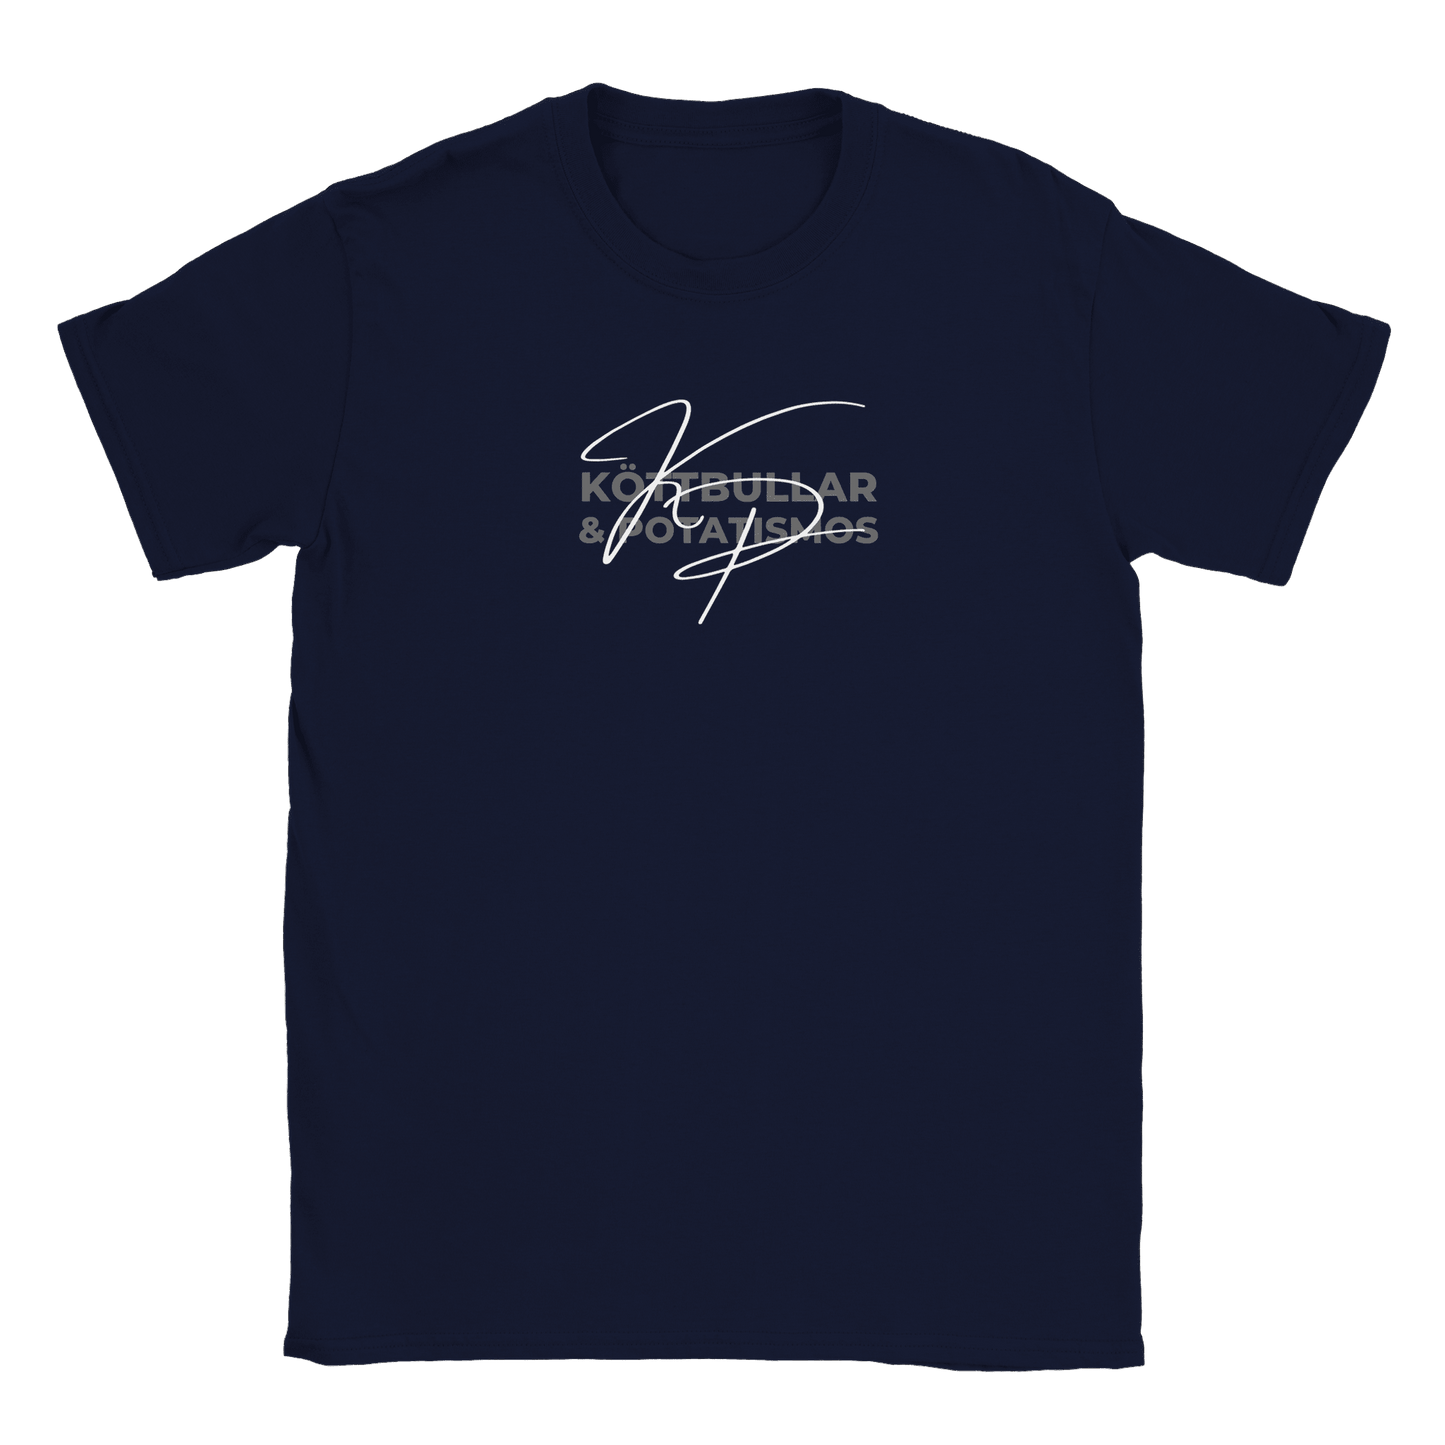 Köttbullar och potatismos - T-shirt Navy